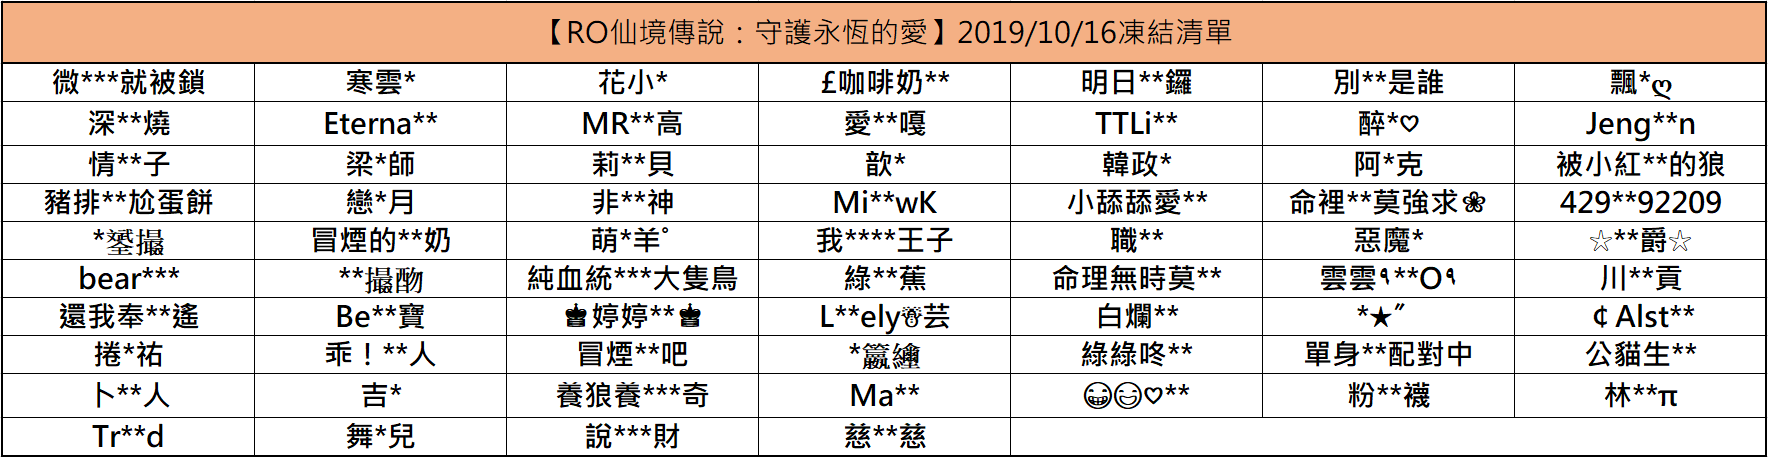 2019/10/16(三)停權名單公告